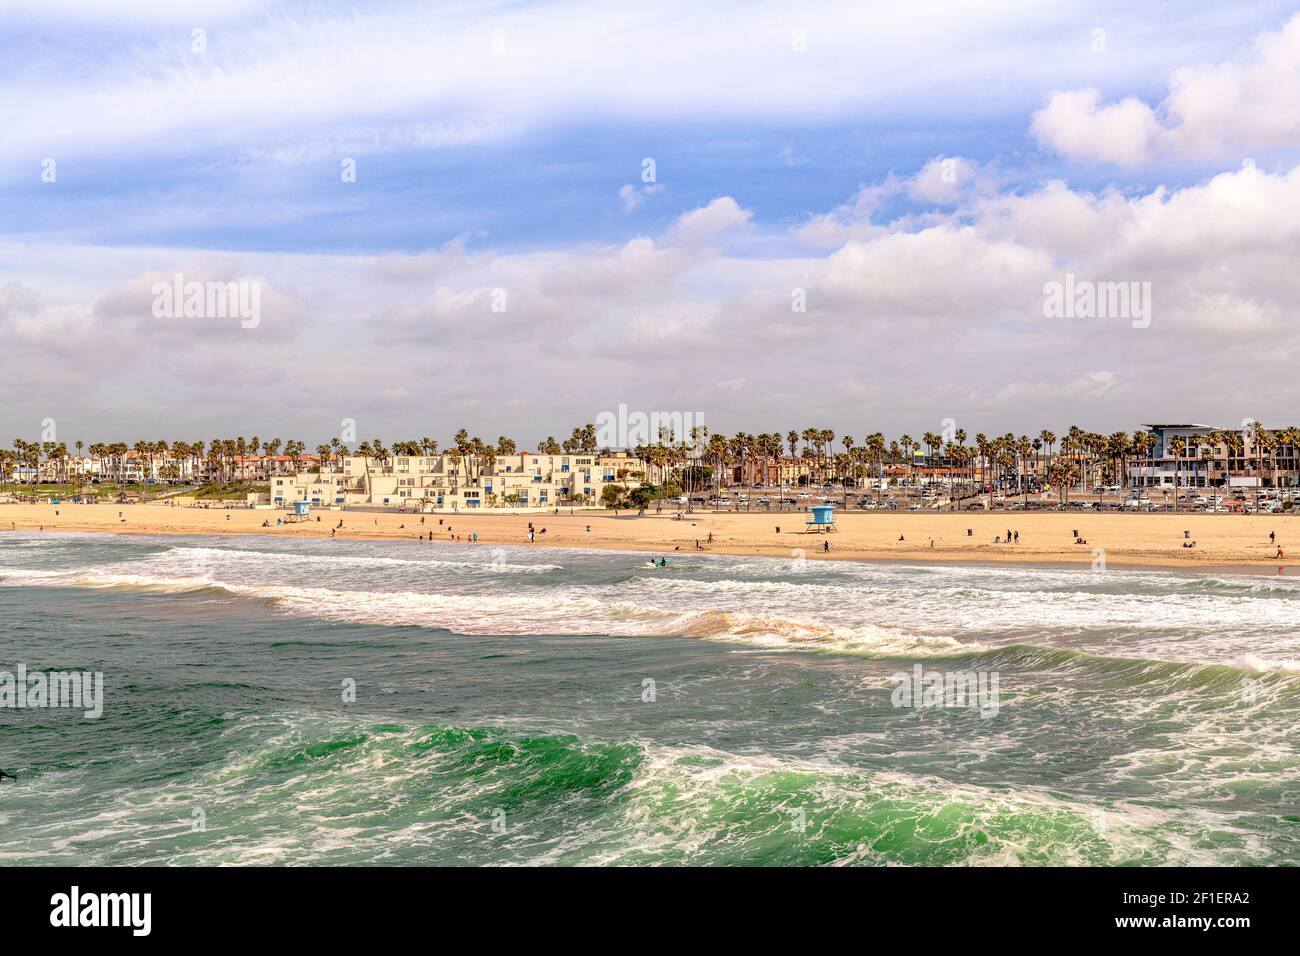 La dynamique Huntington Beach pendant une journée ensoleillée montre l'eau verte de l'aqua et le rivage doré. Banque D'Images